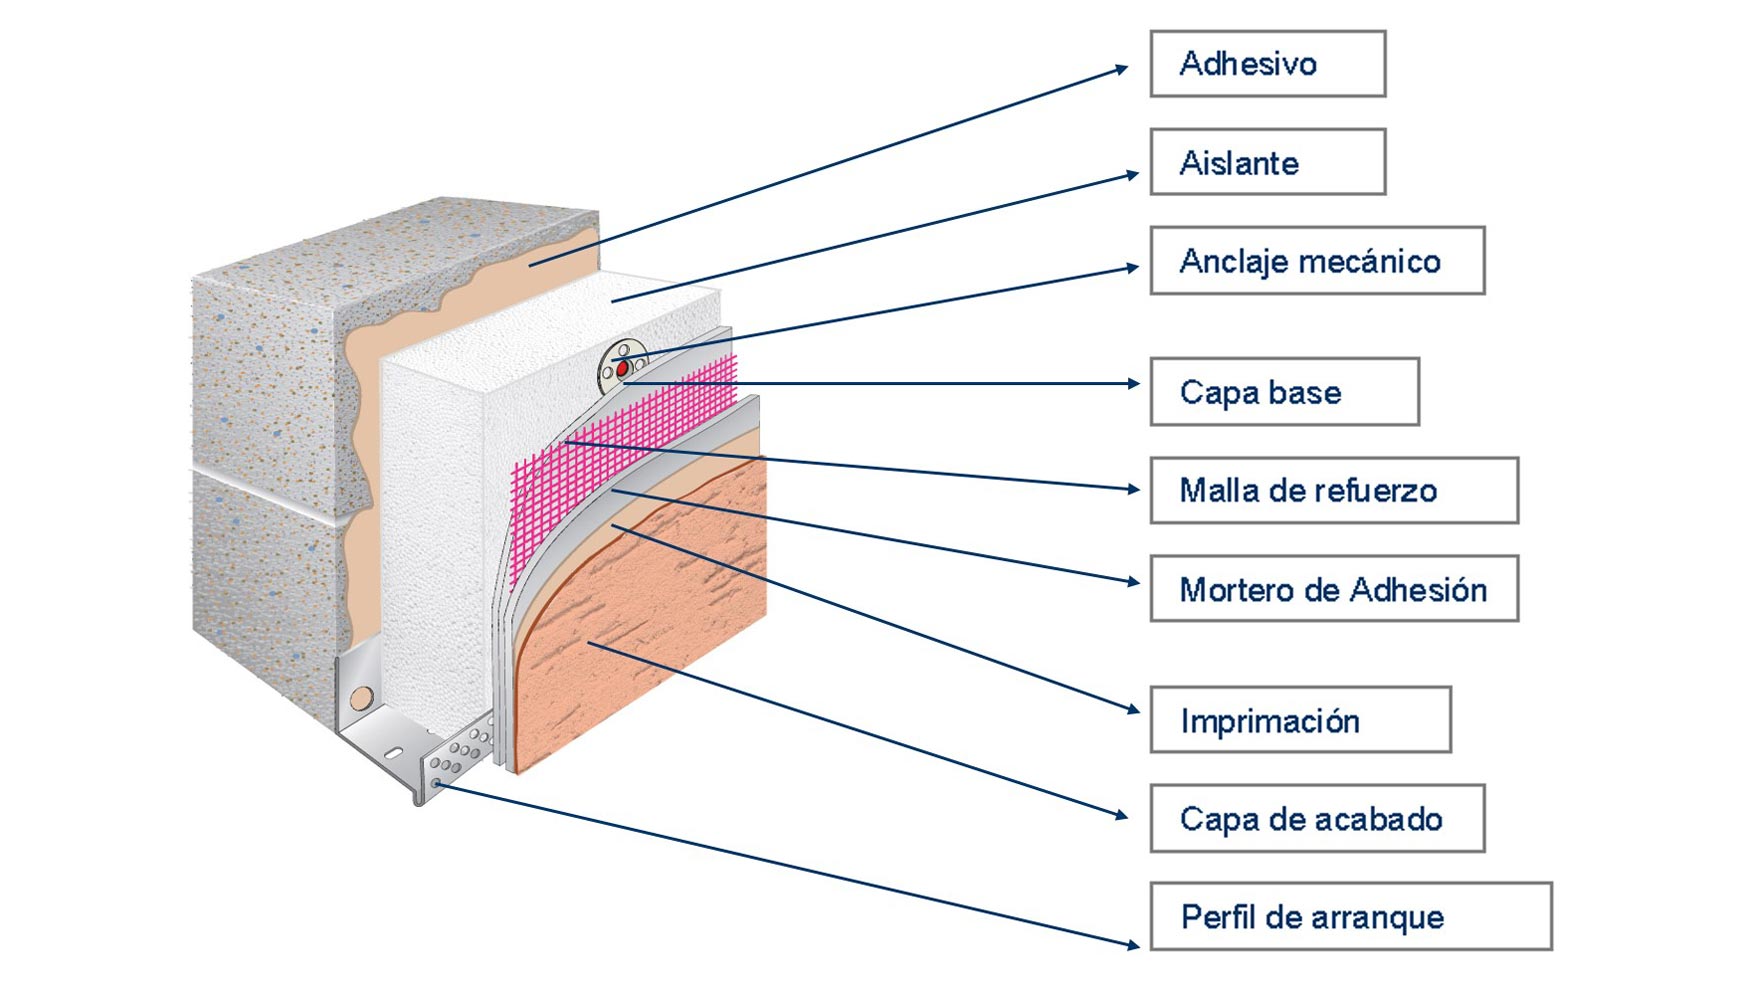 Componentes del Sistema de Aislamiento Trmico por el Exterior (SATE)